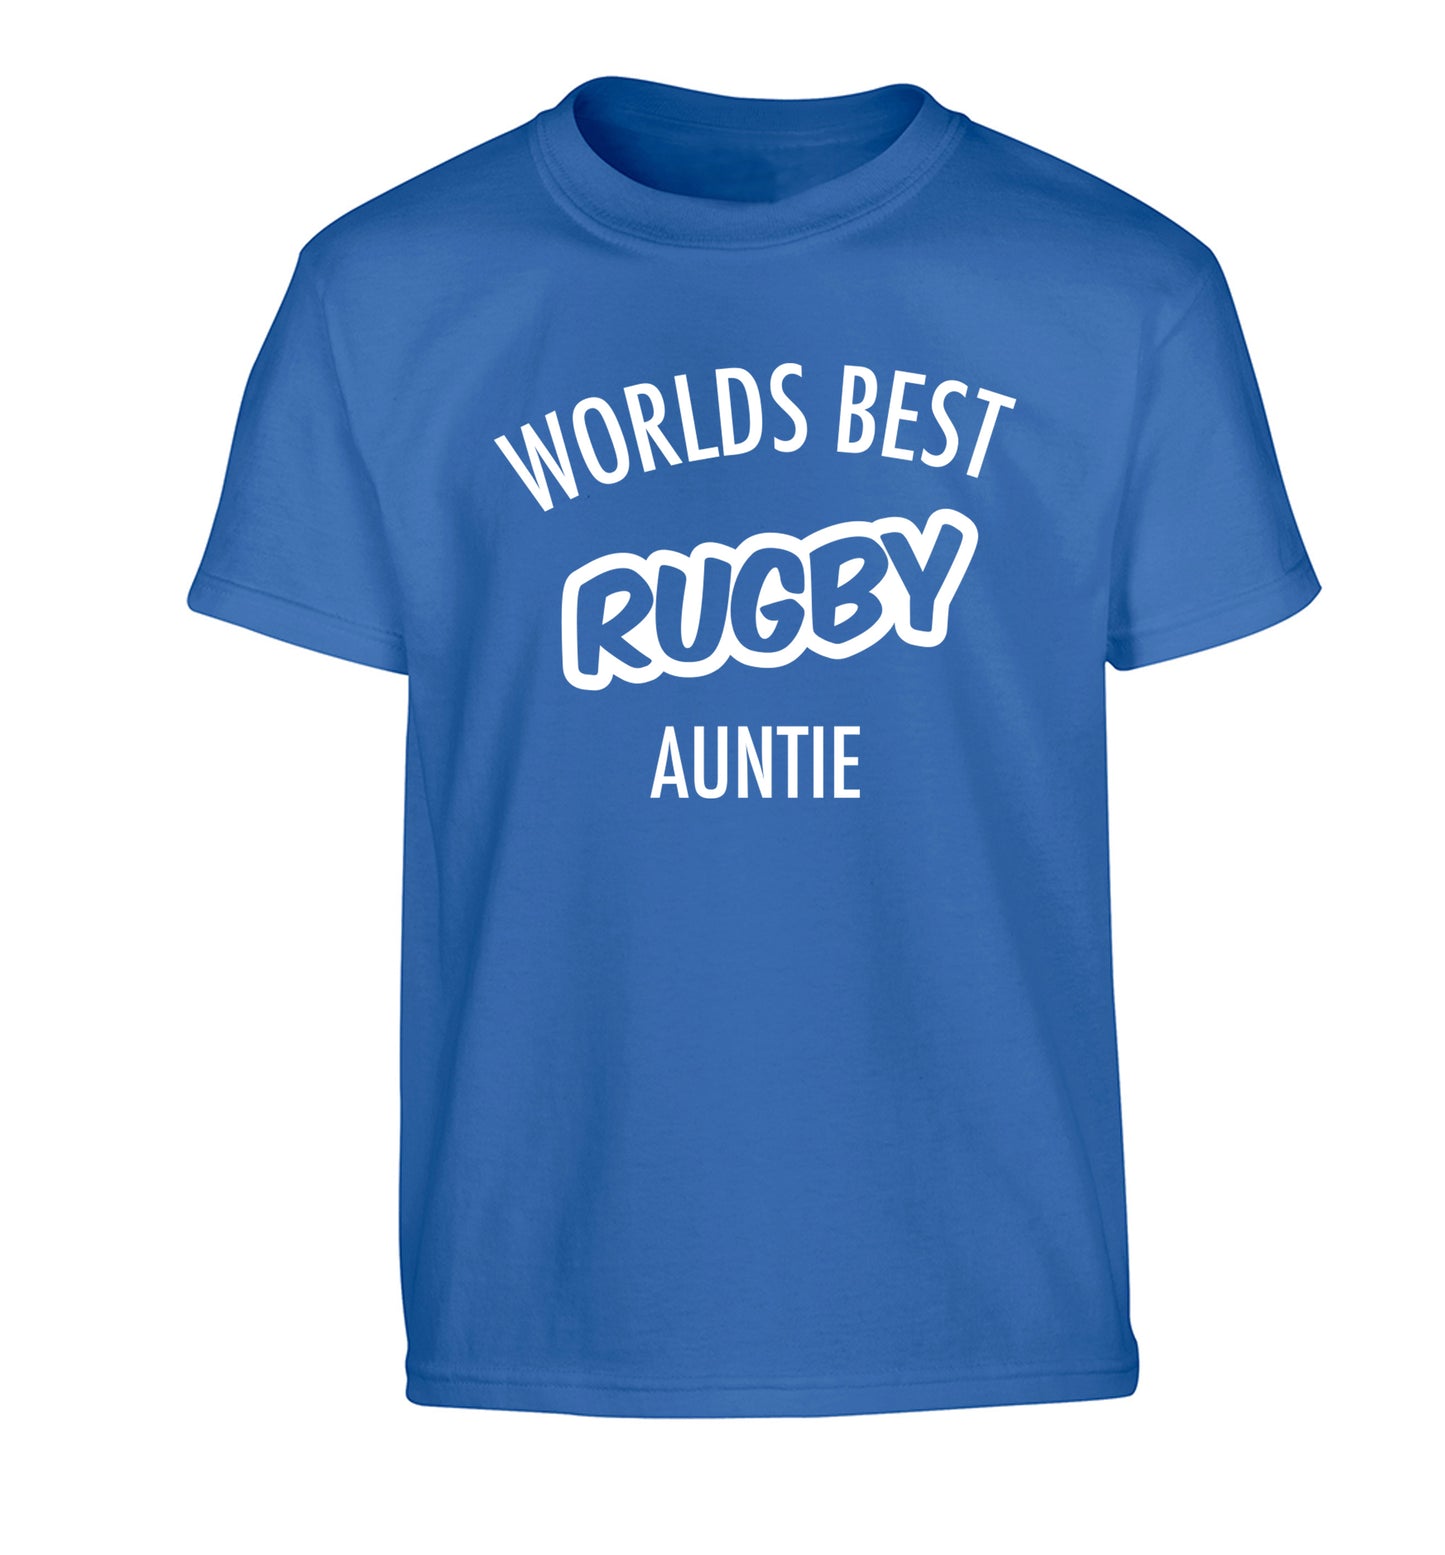 Worlds best rugby auntie Children's blue Tshirt 12-13 Years